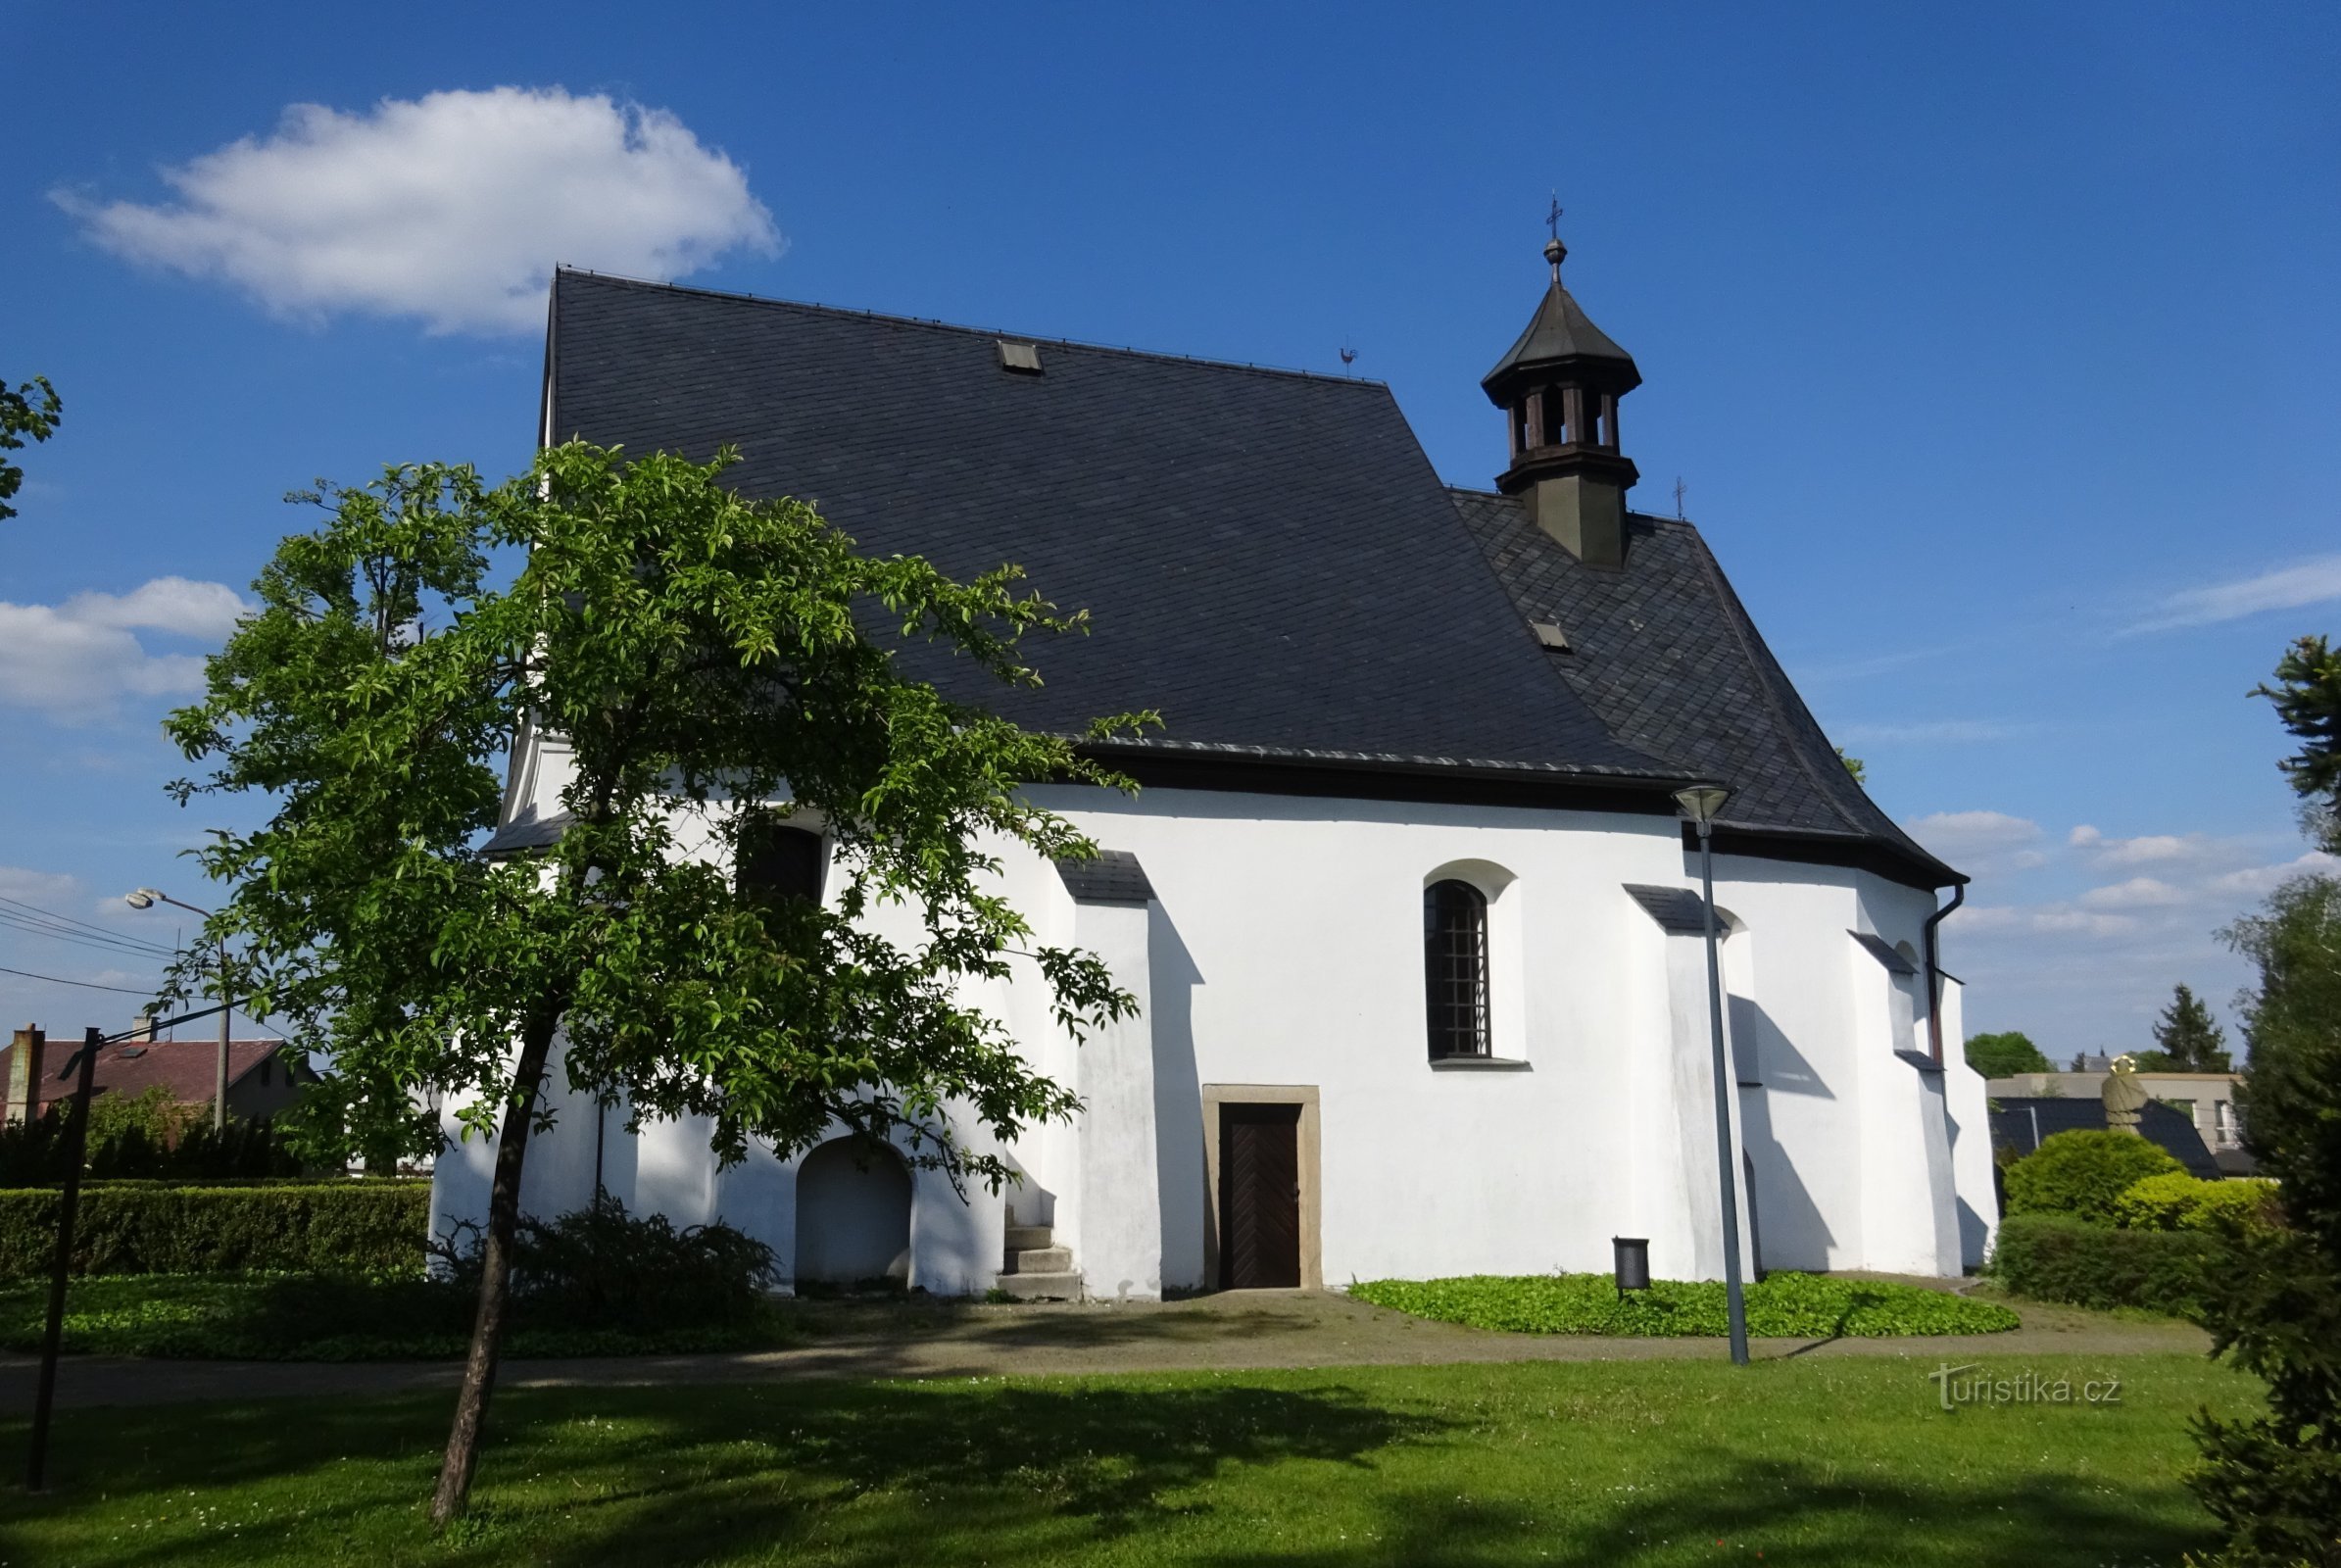 Klimkovice - biserica Sf. Treime